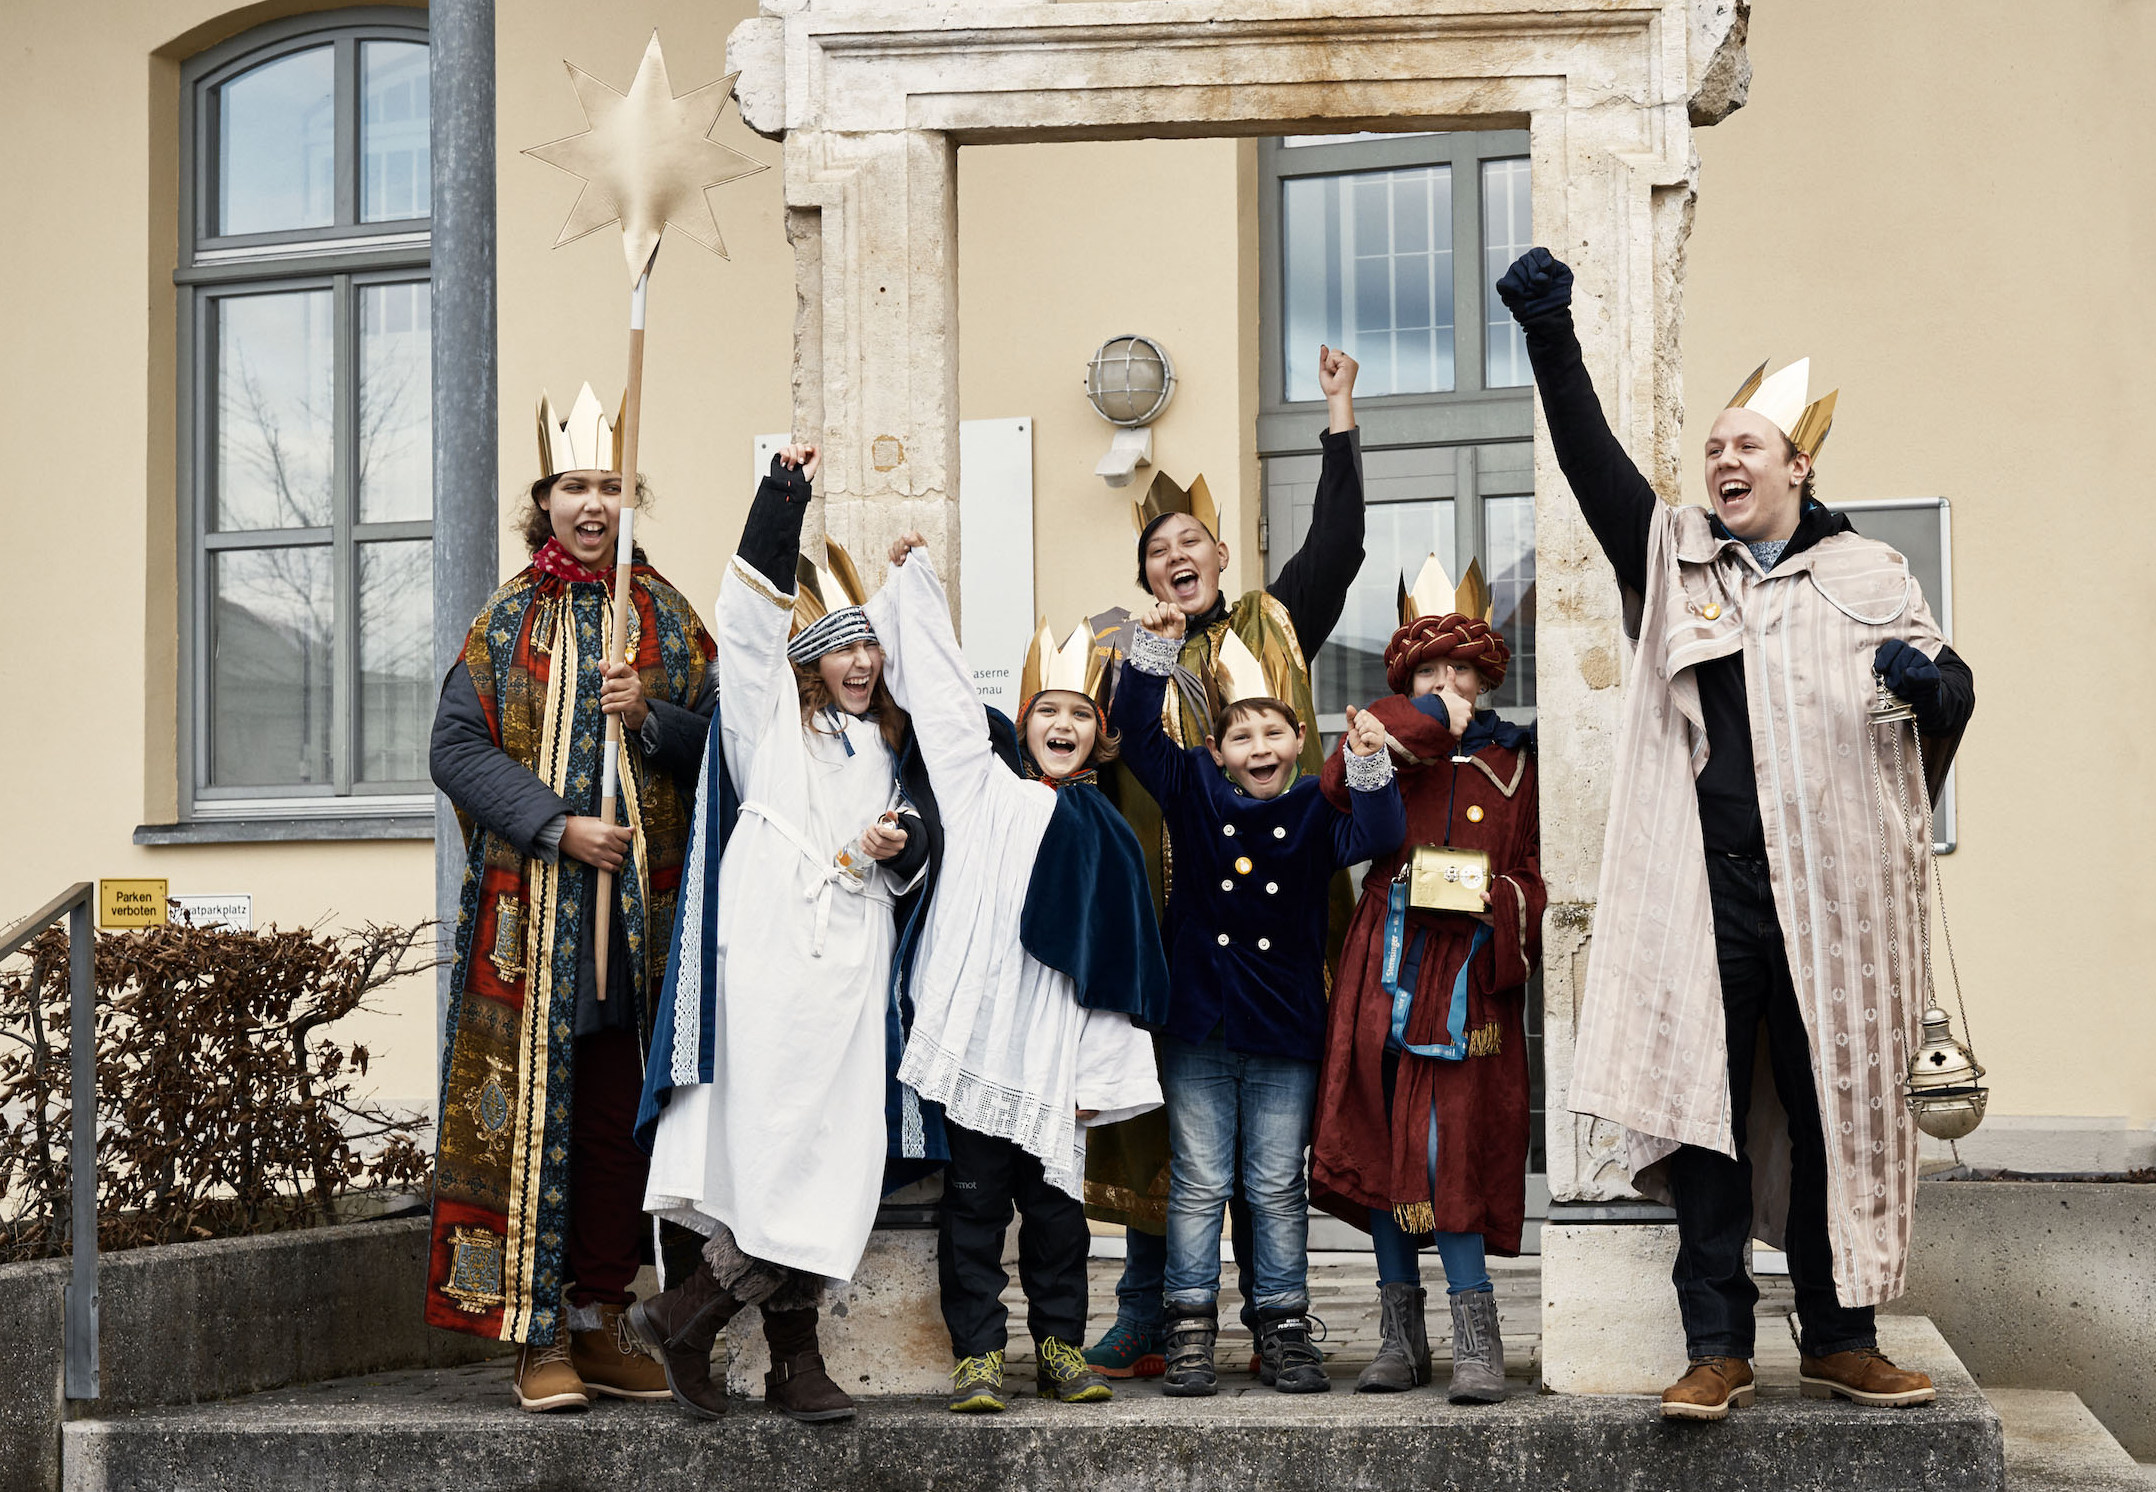 Kinder mit Kronen und Gewändern jubeln. Bild: Benne Ochs / Kindermissionswerk